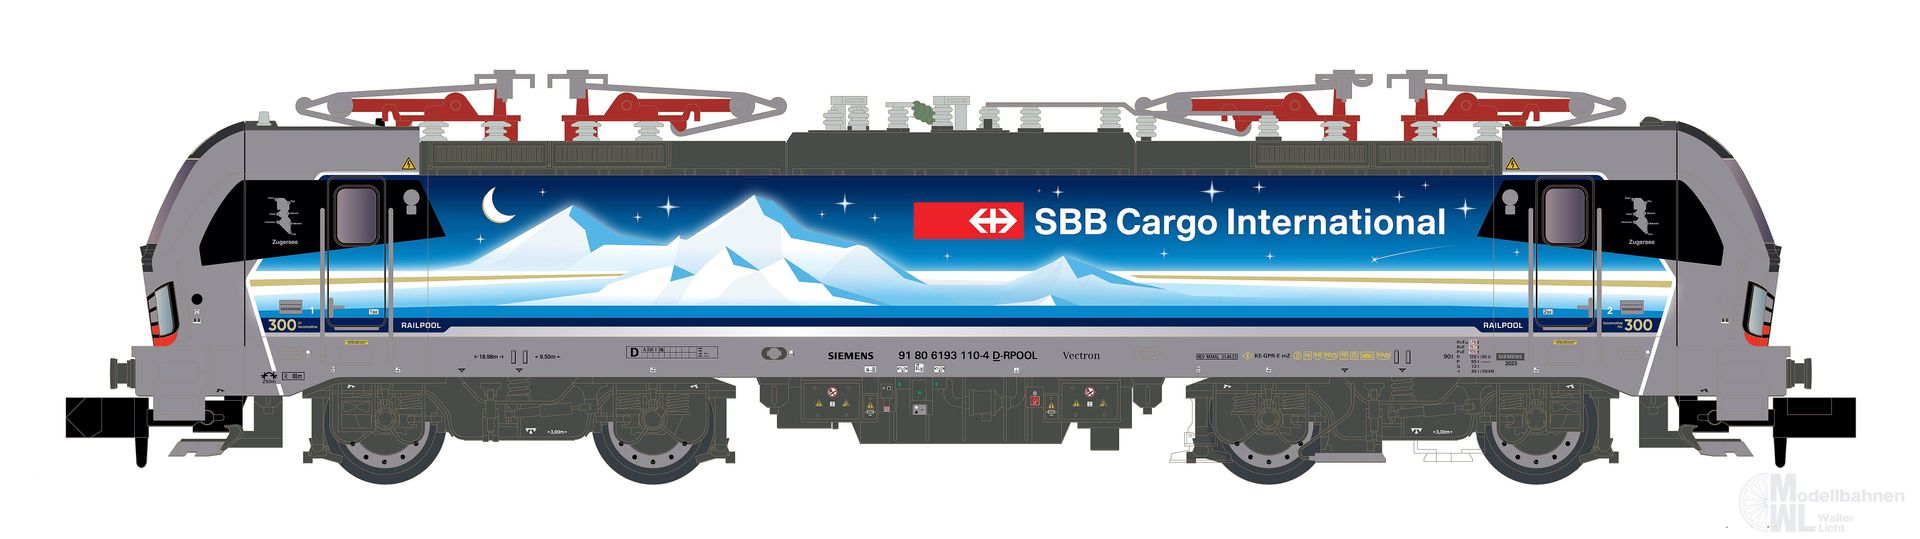 Hobbytrain 30175S - E-Lok BR 193 110 SBB Cargo Ep.VI Goldpiercer N 1:160 Sound